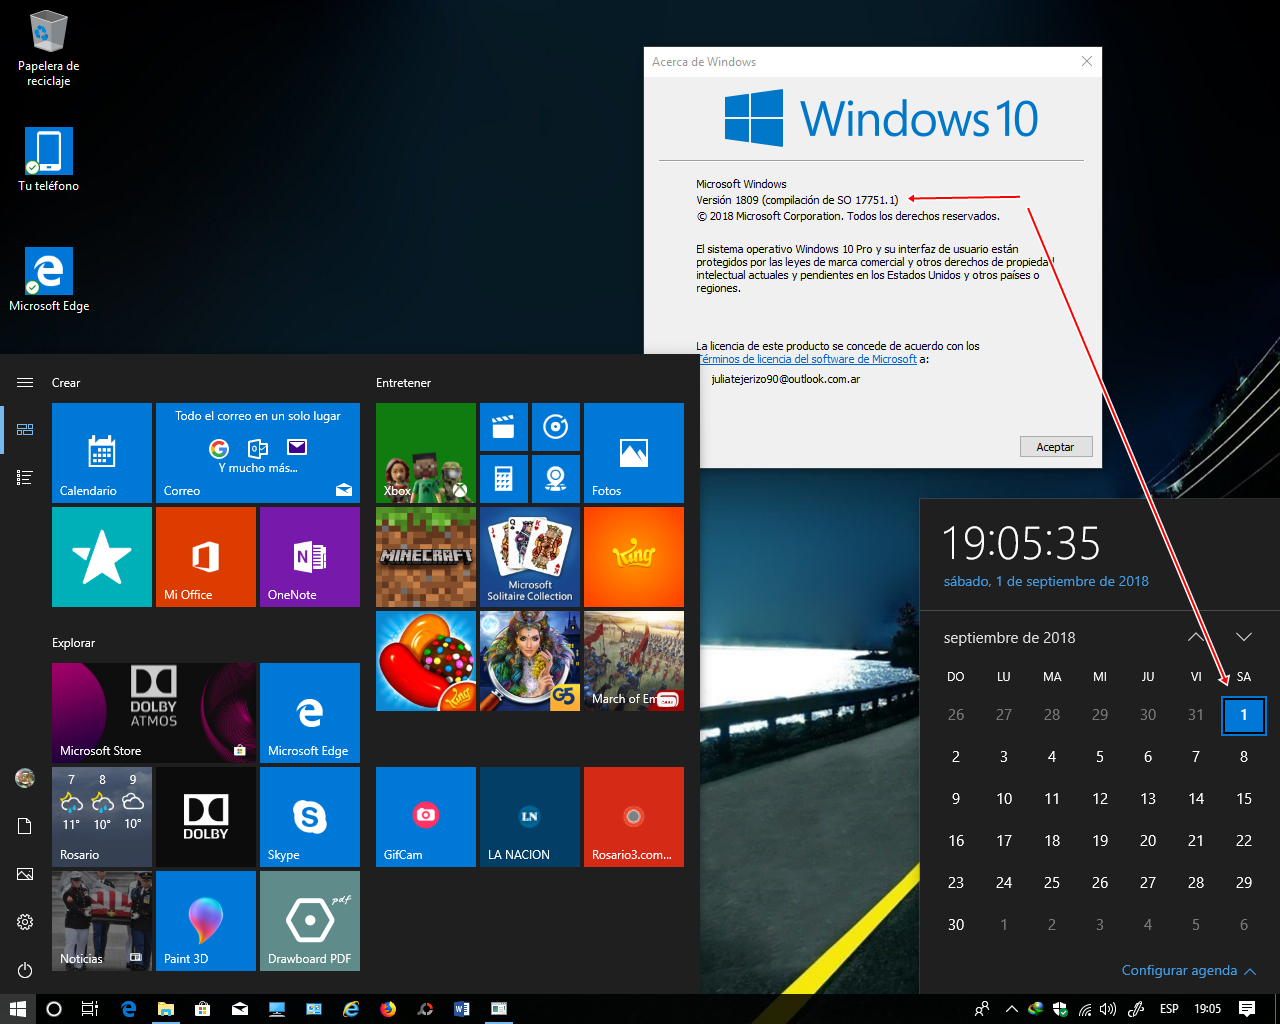 CIYFshtB_o - Windows 10 RS5 6en1 OEM + Extras [Preactivado][x86][Esp] [UL-FJ-RG] - Descargas en general